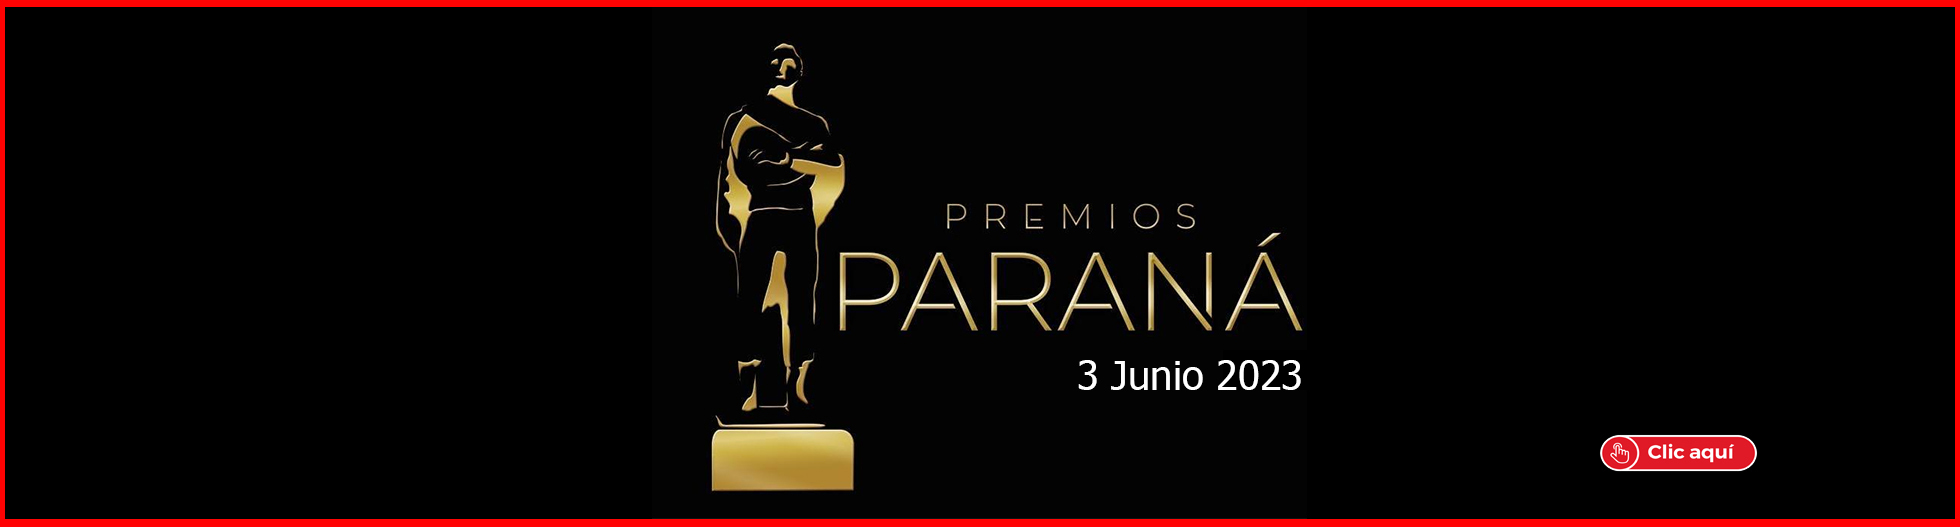 Premios Parana